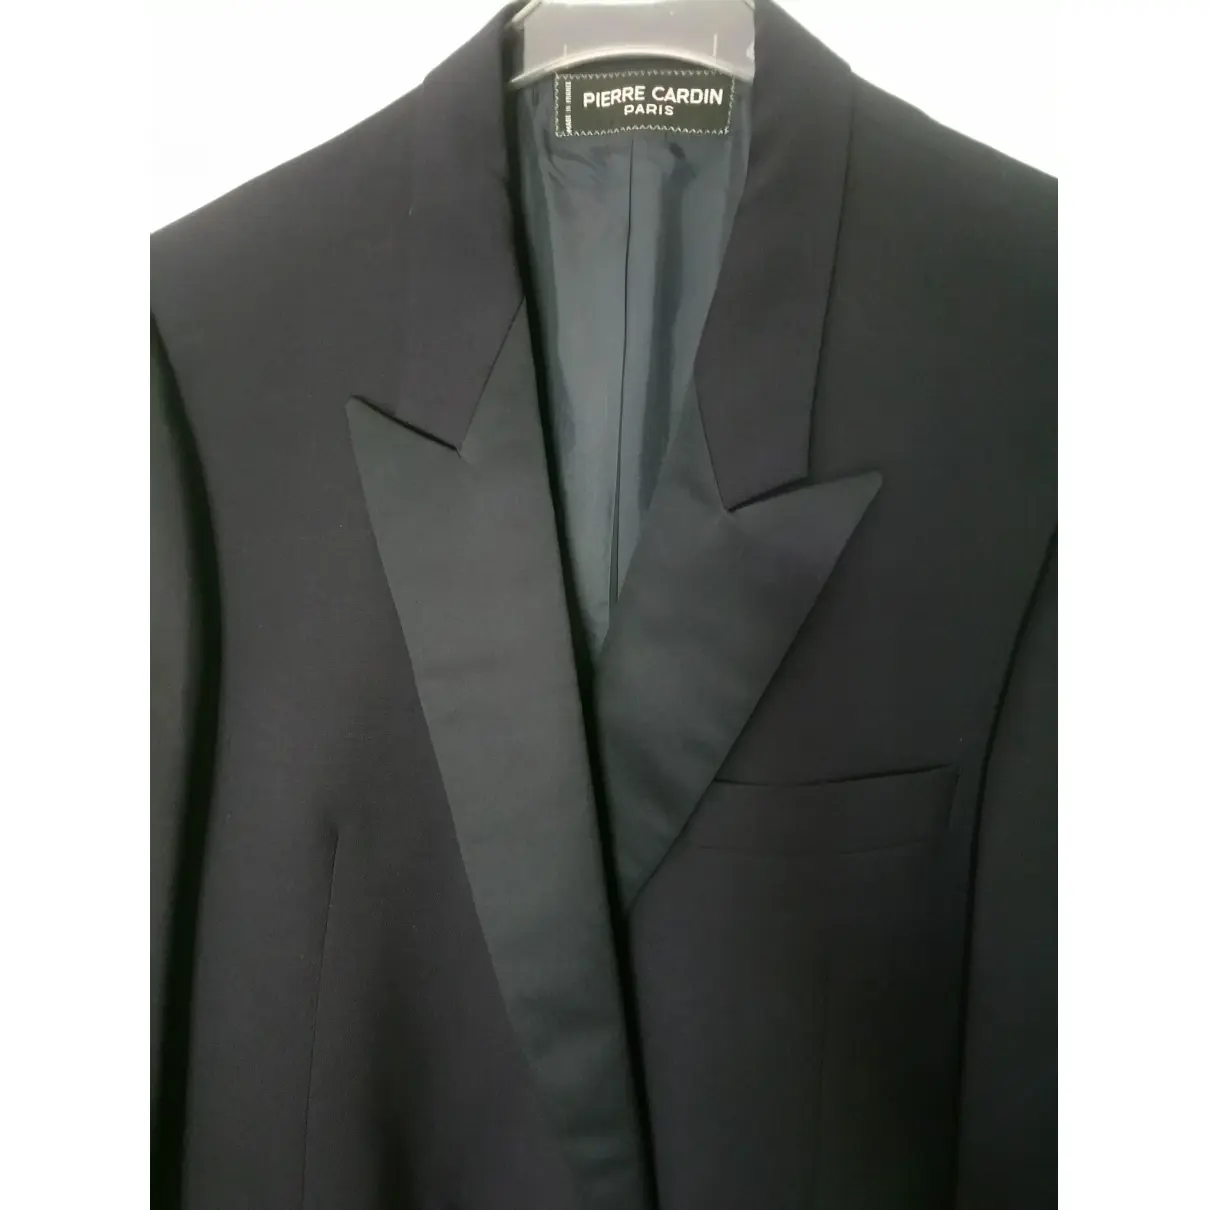 Buy Pierre Cardin Wool suit online